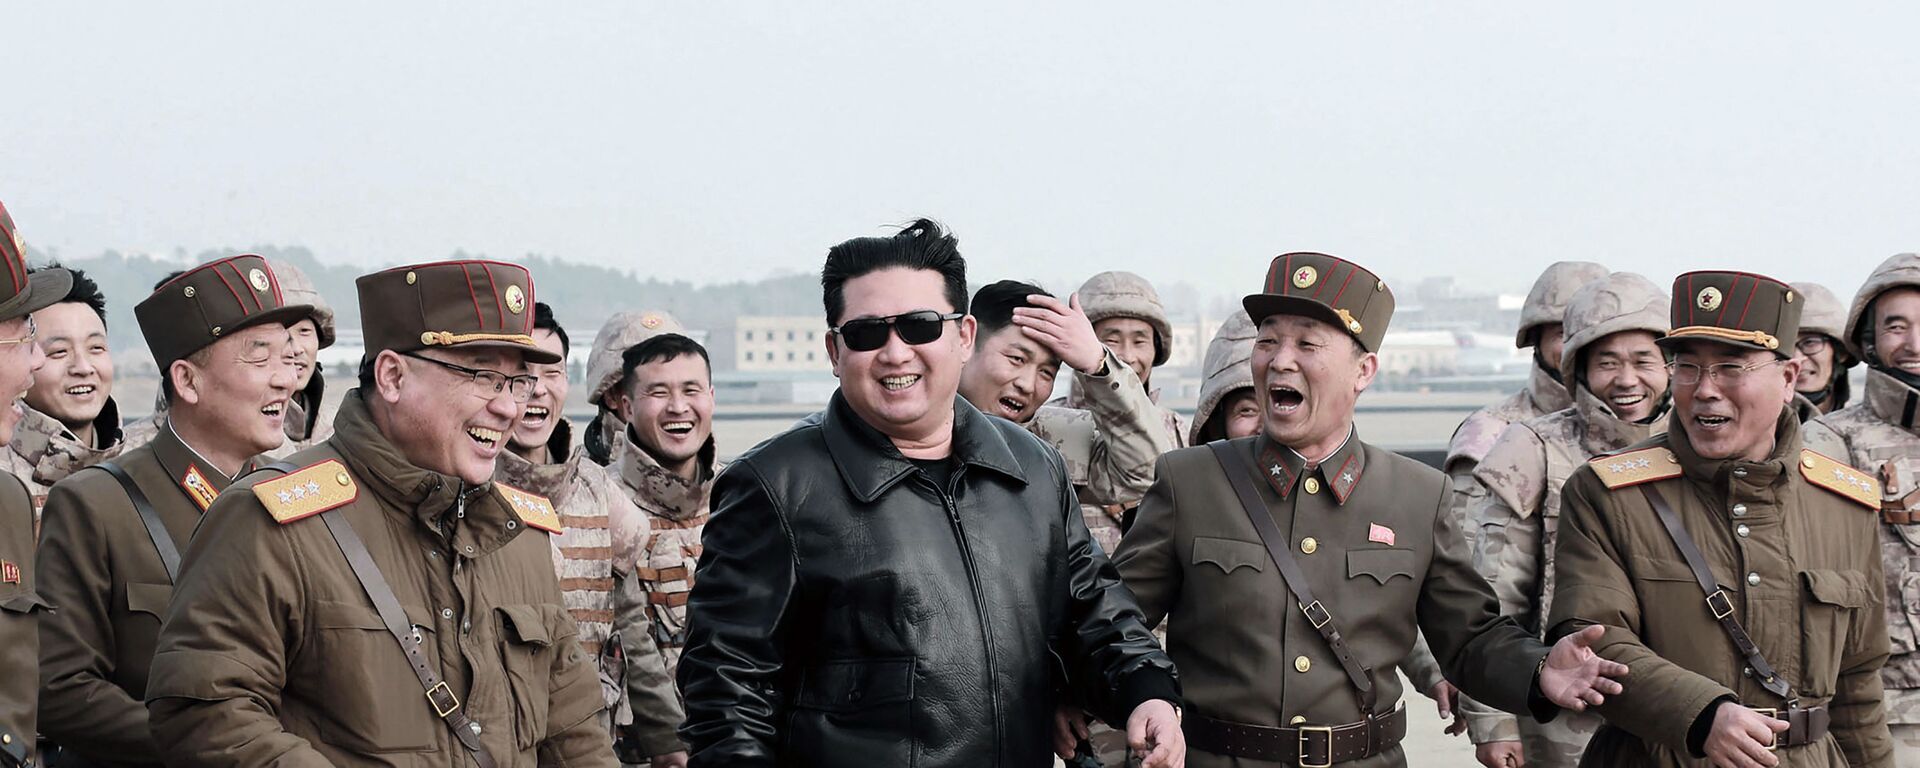 زعيم كوريا الشمالية كيم جونغ أون عند إطلاق  ما سمته وسائل إعلامية أنه نوع جديد من الصواريخ الباليستية العابرة للقارات، في هذه الصورة التي نشرتها وكالة الأنباء المركزية الكورية الشمالية  في 24 مارس 2022. - سبوتنيك عربي, 1920, 28.03.2022